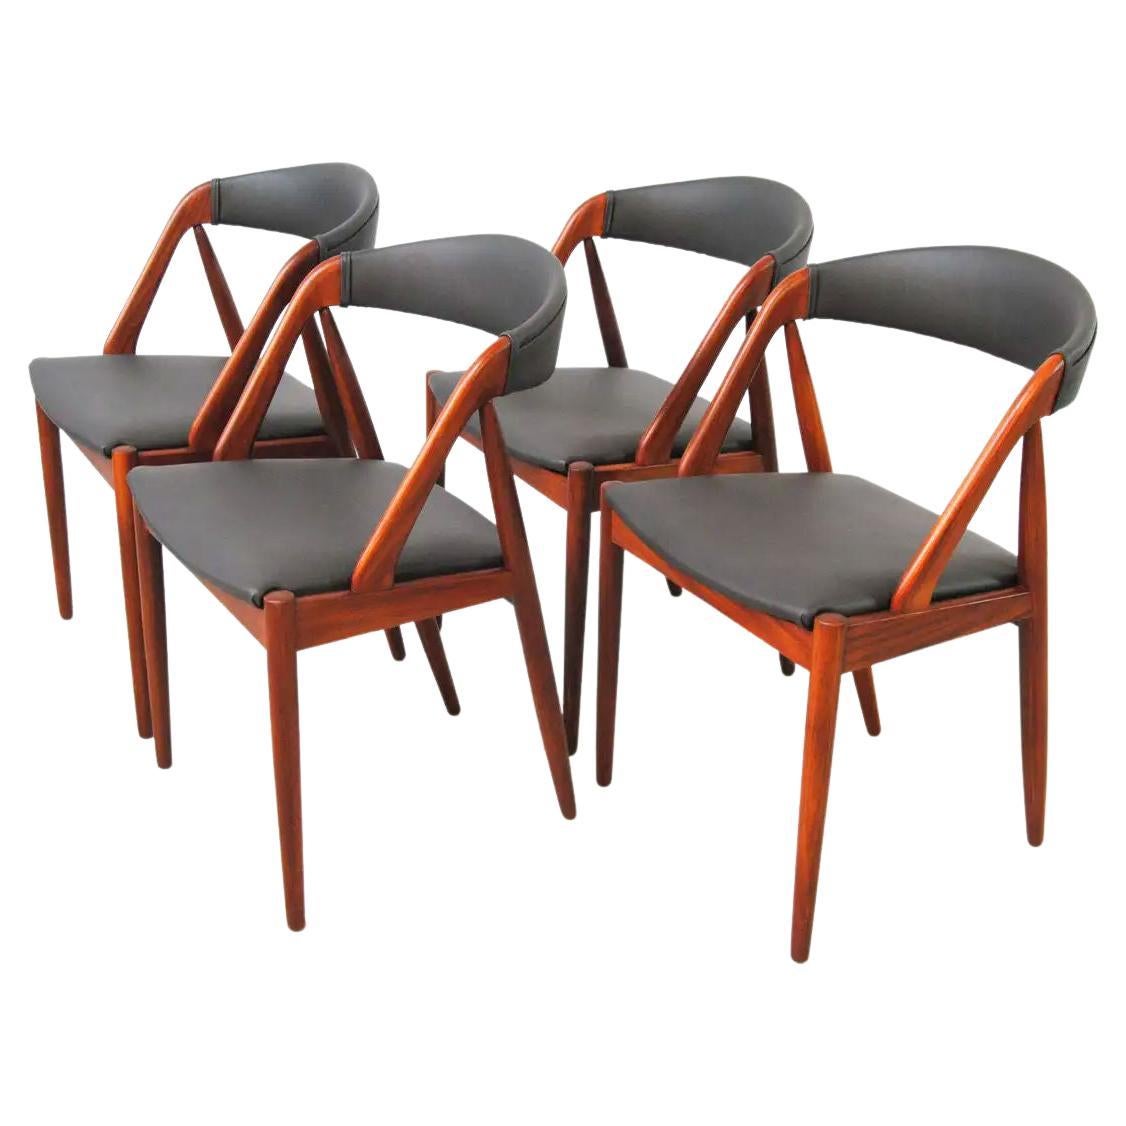 Quatre chaises de salle à manger Kai Kristiansen en teck restaurées, retapissées sur mesure incluses